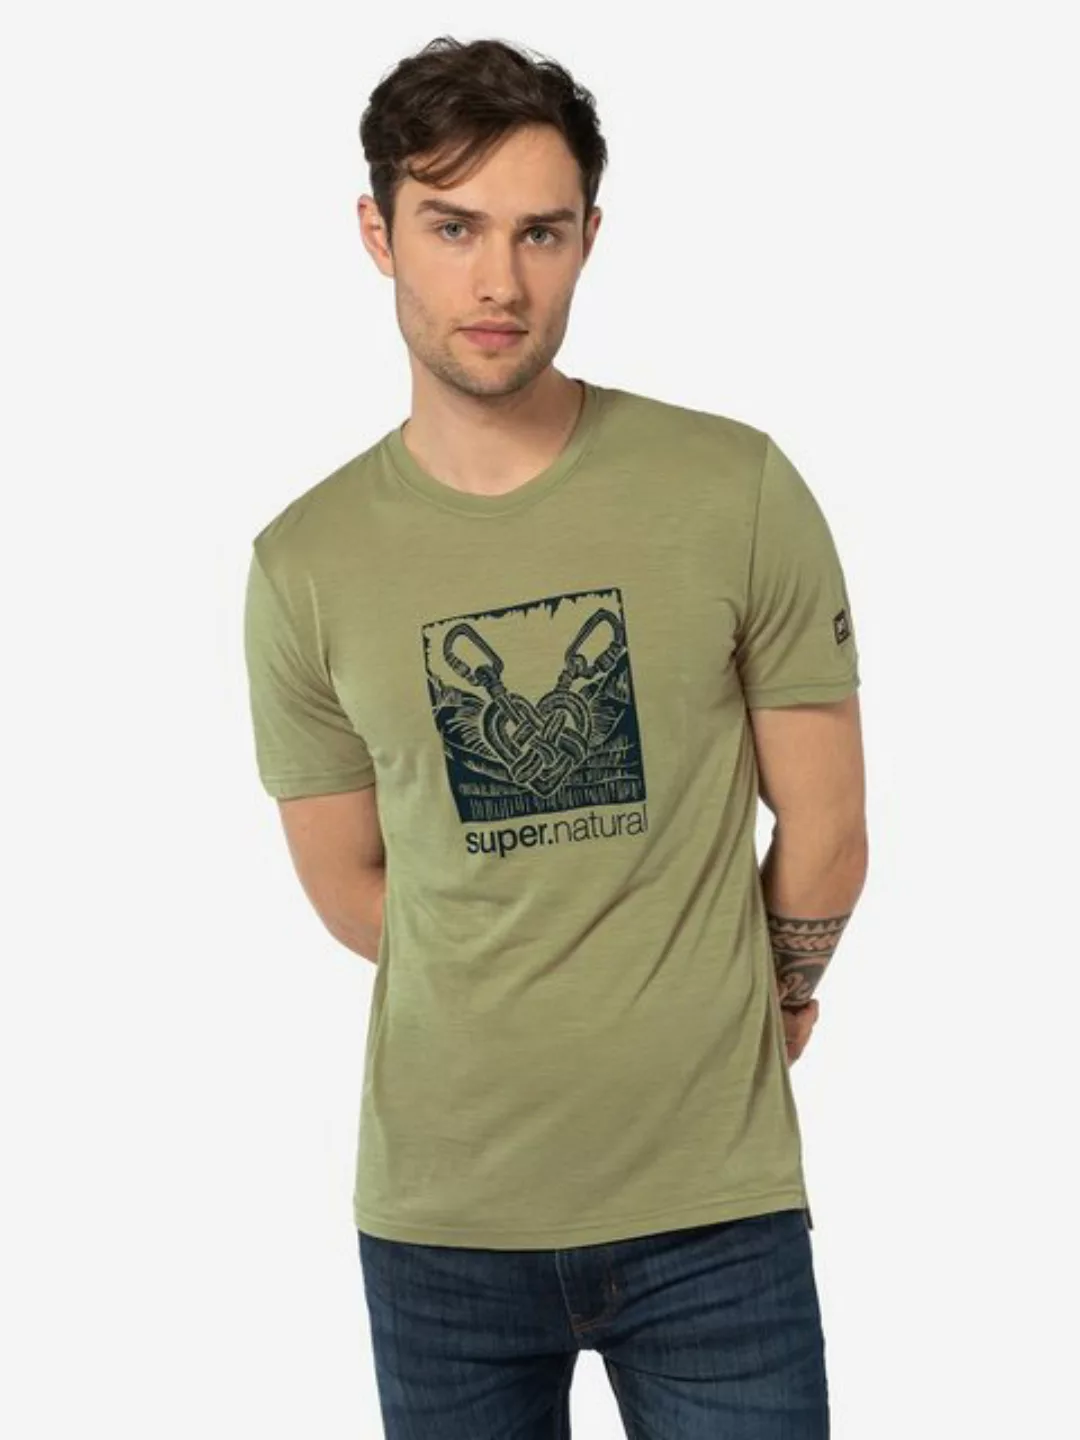 SUPER.NATURAL T-Shirt für Herren, Merino TIED BY HEART Herz Motiv, atmungsa günstig online kaufen